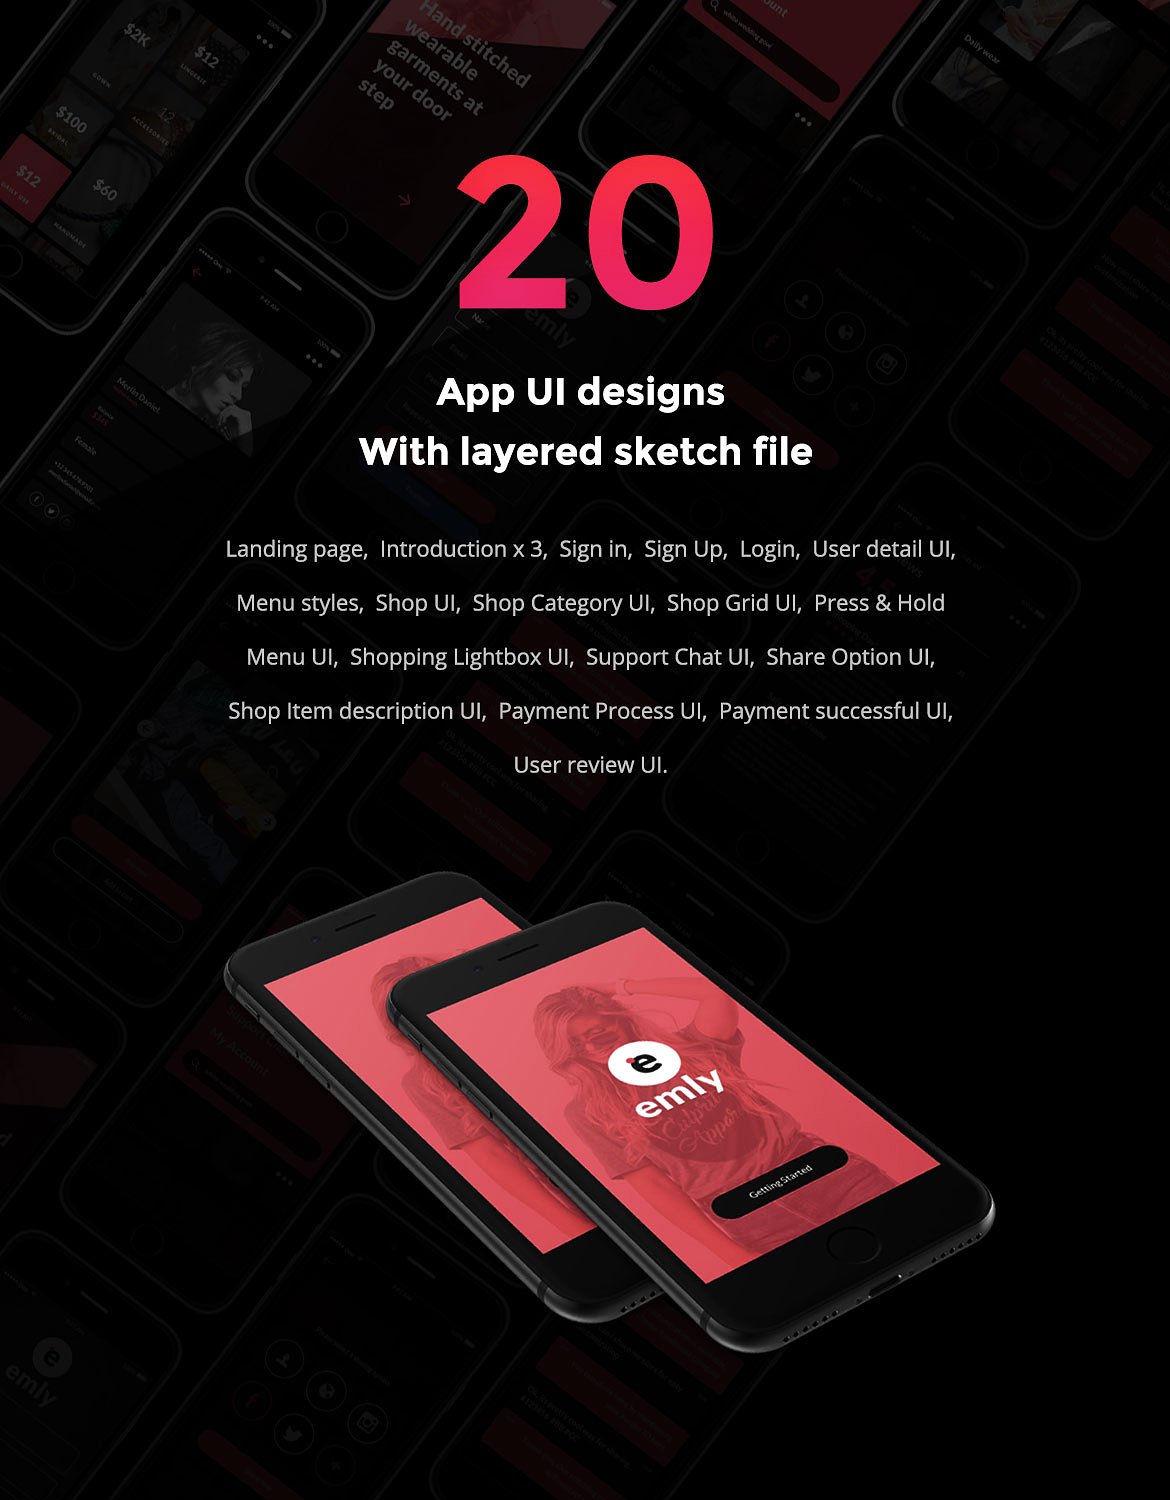 现代创意在线购物手机APP UI工具包 Emly Creative Shopping App UI Kit插图1